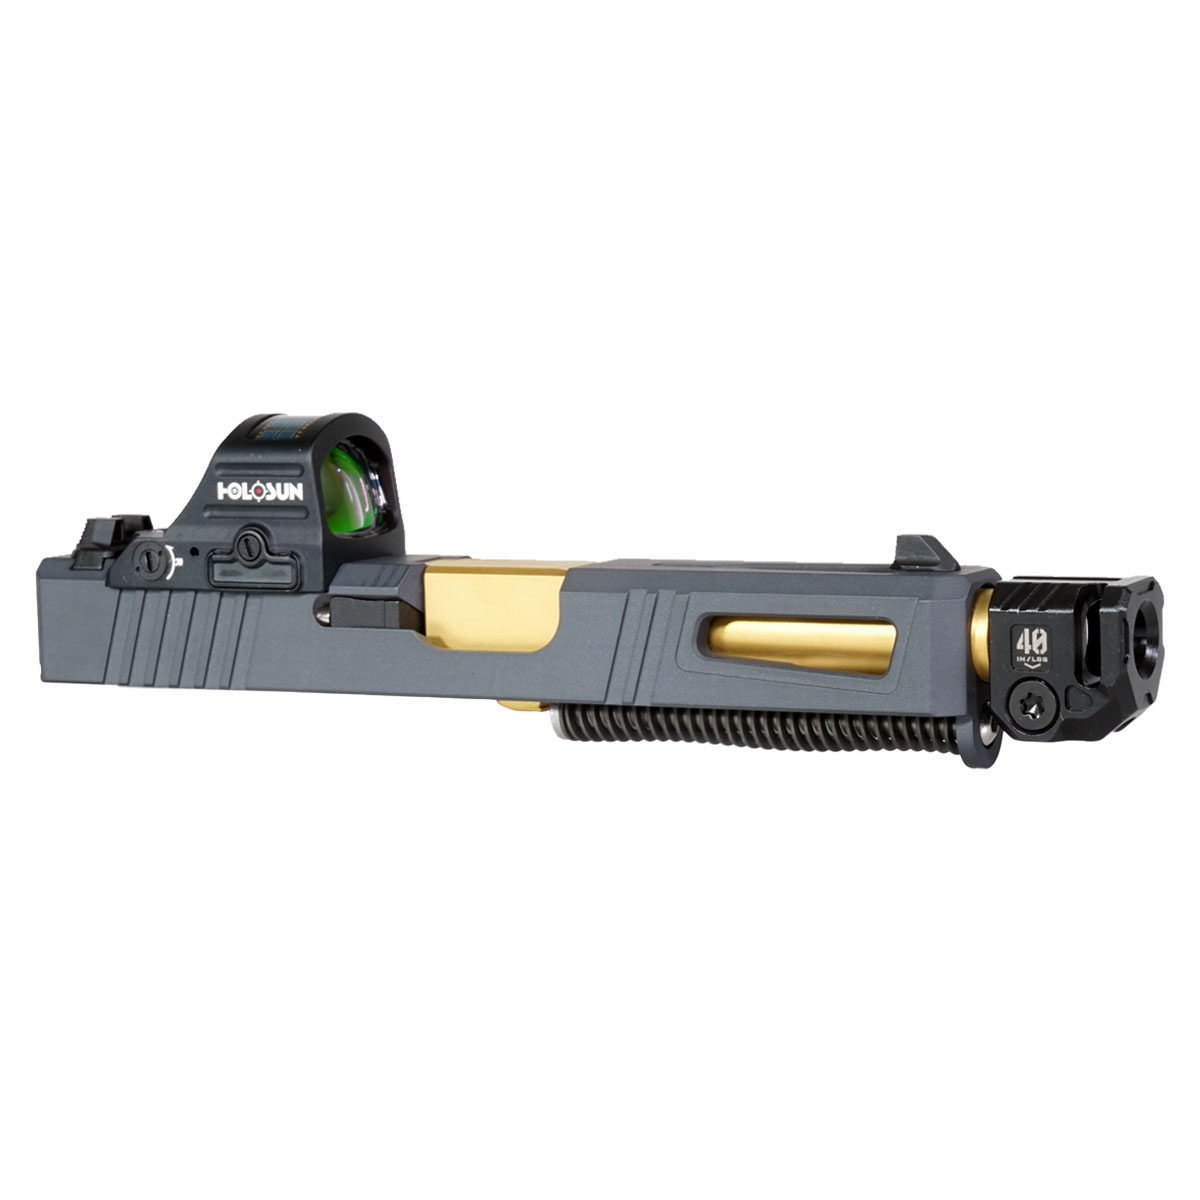 OTD 'Steele V2' 9mm Complete Slide Kit - Glock 19 Gen 1-3 Compatible